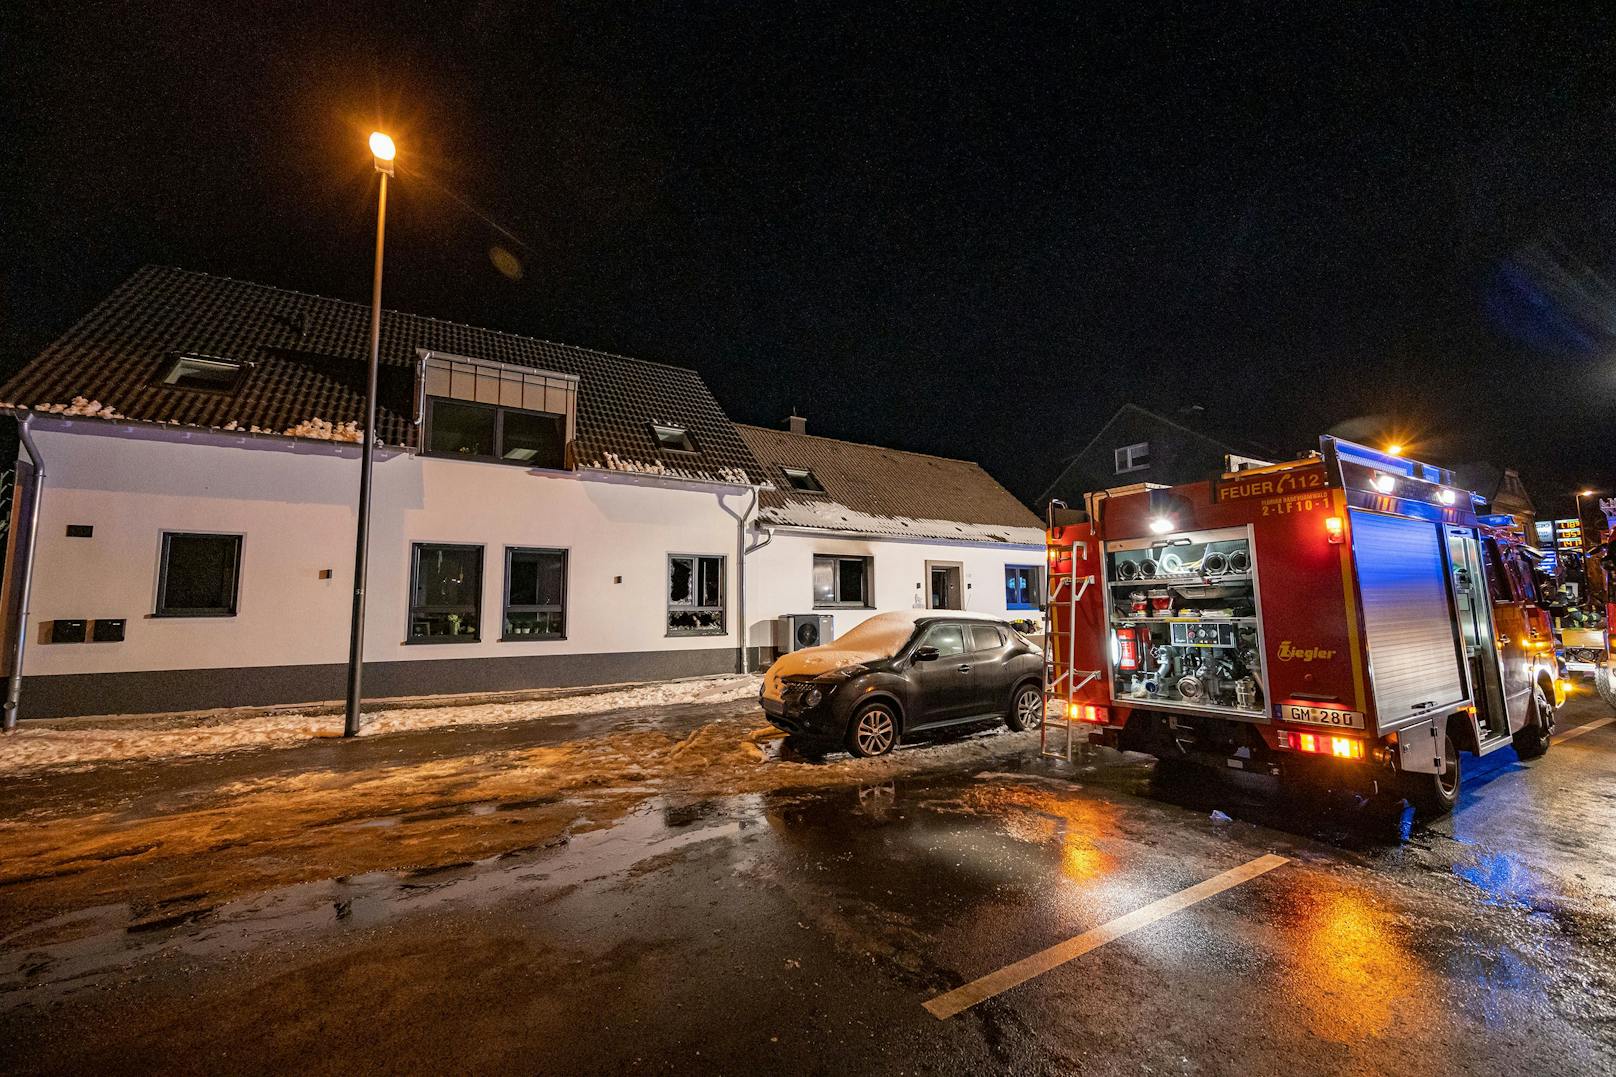 Nach einem Wohnungsbrand im Bergischen Land (Nordrhein-Westfalen) wurden fünf Leichen entdeckt. Es soll sich um einen Mann, seine Frau und deren zwei Kinder sowie ein weiteres Familienmitglied handeln.